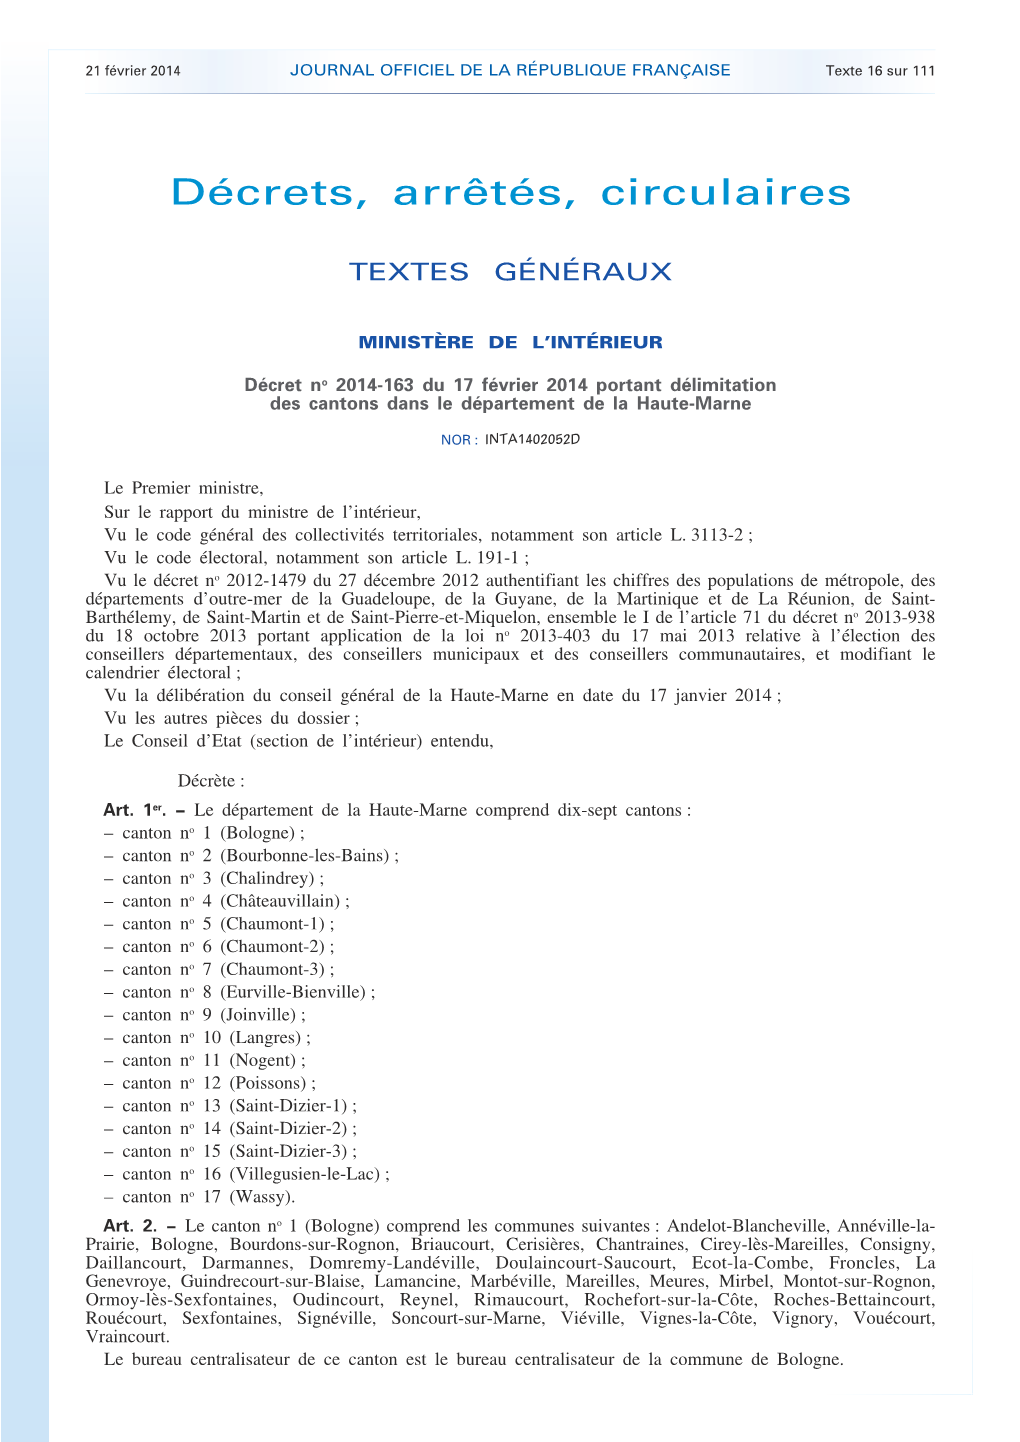 JOURNAL OFFICIEL DE LA RÉPUBLIQUE FRANÇAISE Texte 16 Sur 111